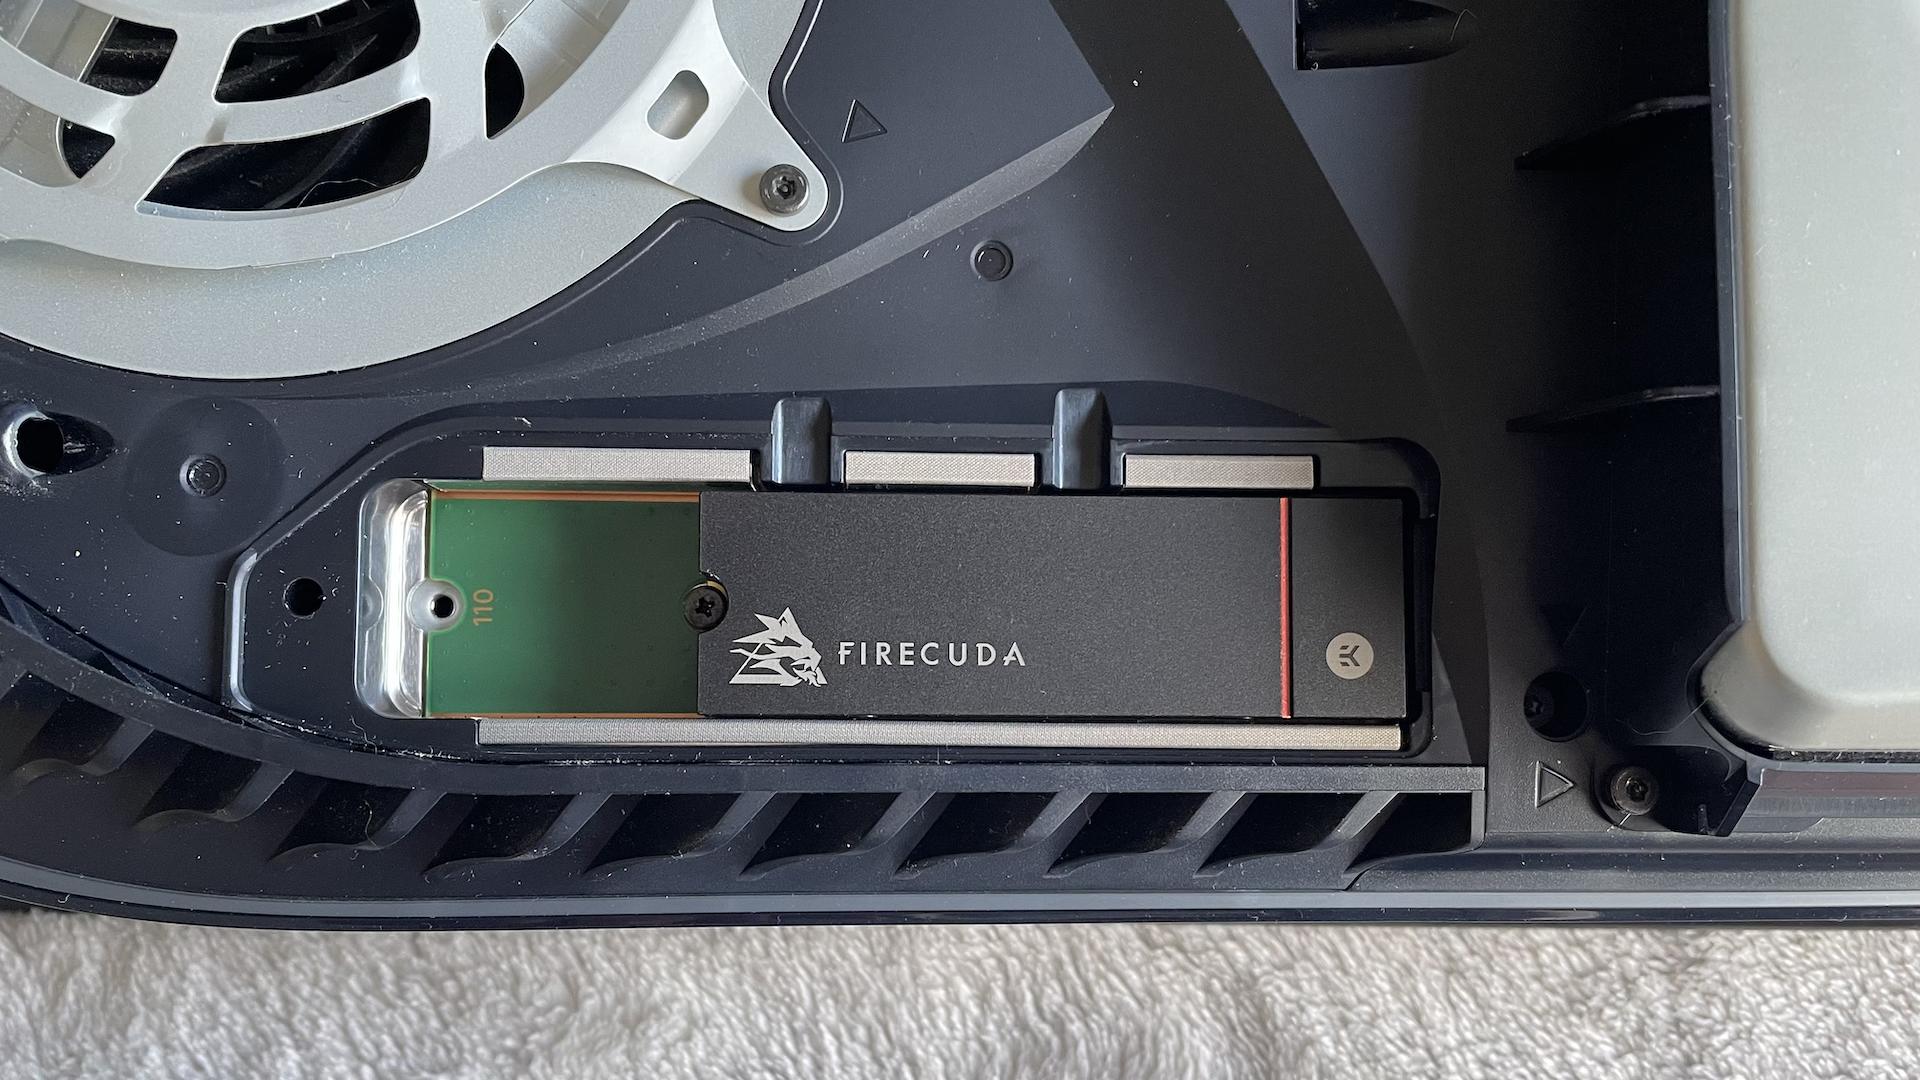 PS5 : comment installer un disque dur SSD M.2 pour augmenter votre stockage